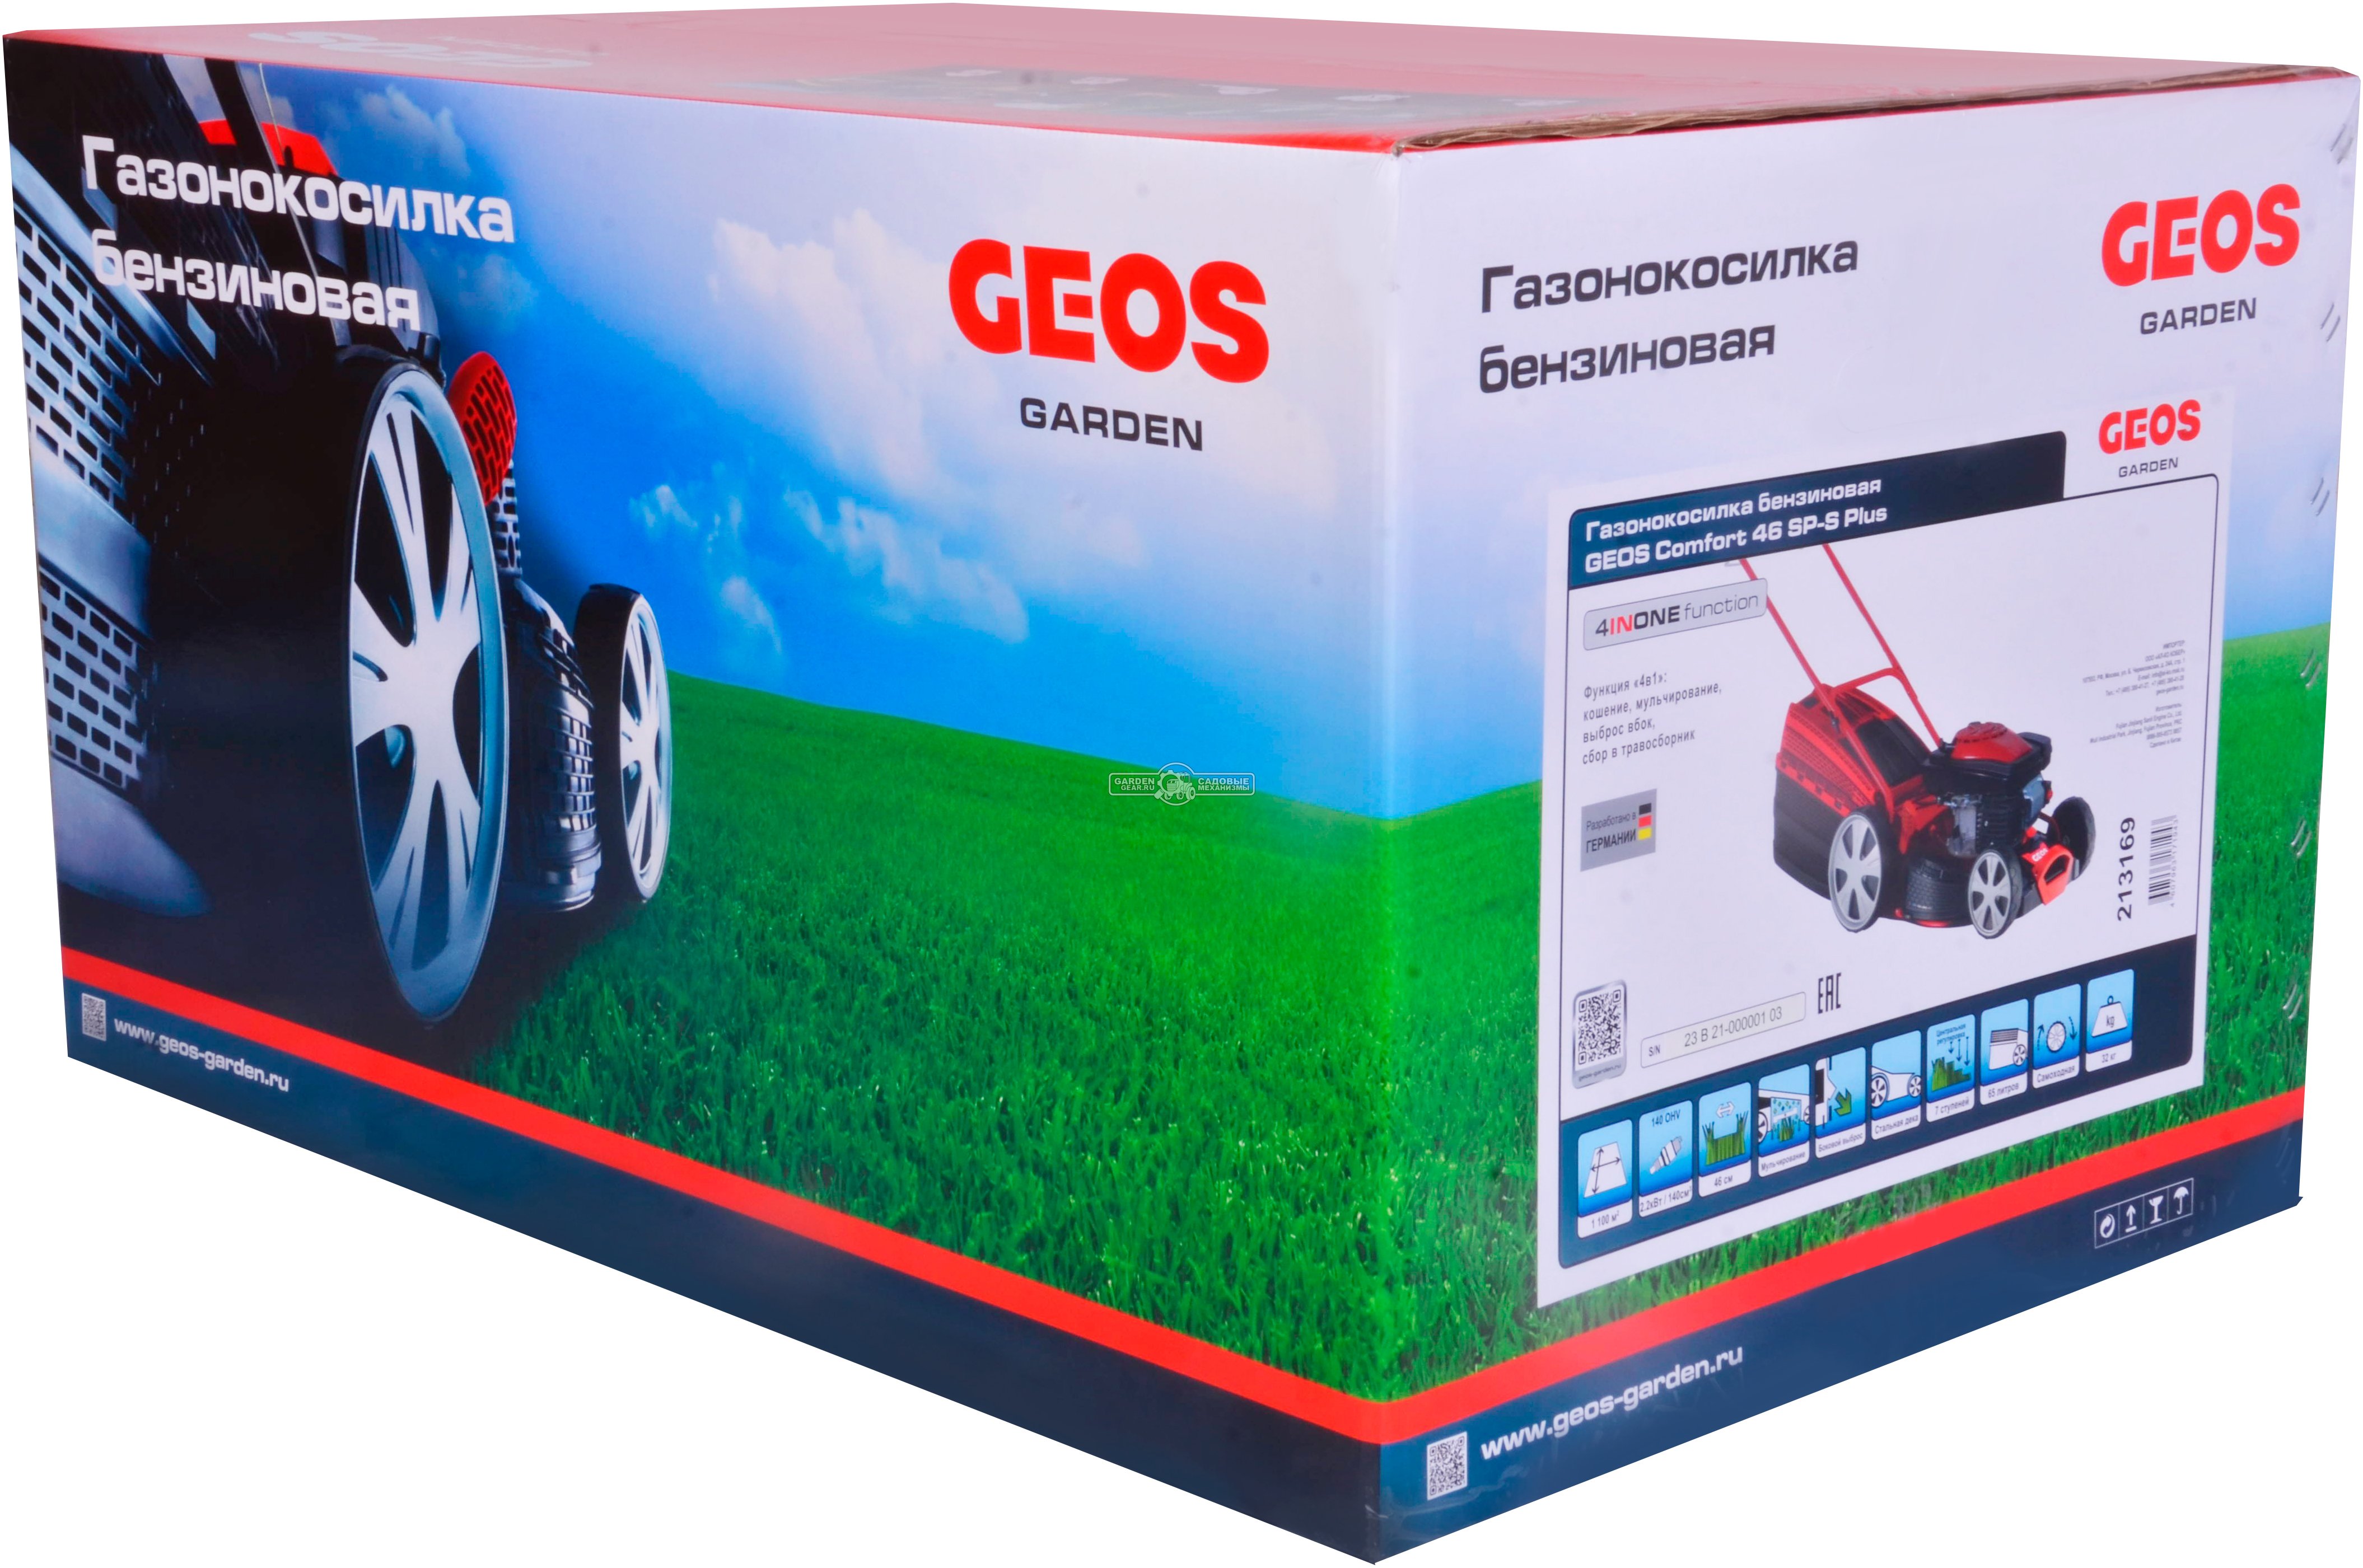 Газонокосилка бензиновая Geos Comfort 46 SP-S Plus (PRC, 46 см, Sanli, 140 см3, сталь, 4 в 1, 65 л, 32 кг)